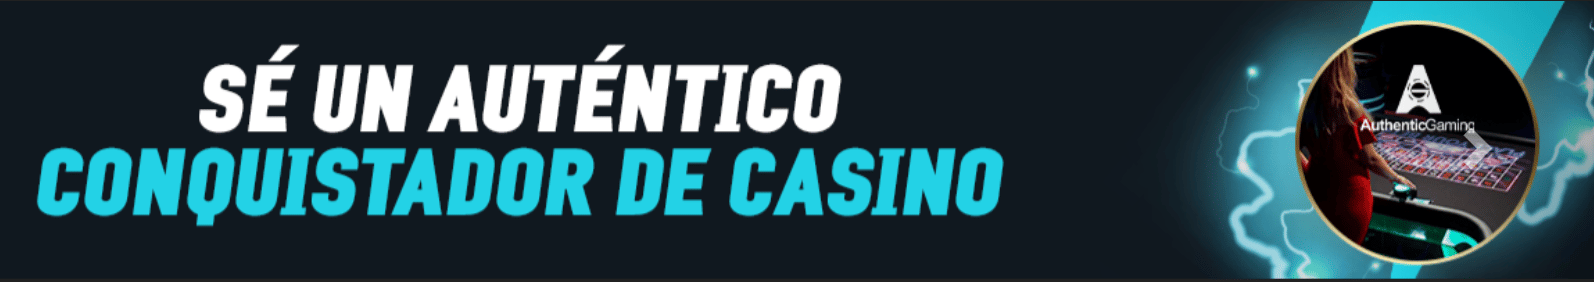 Juegos de casino: slots, lotería y bingo